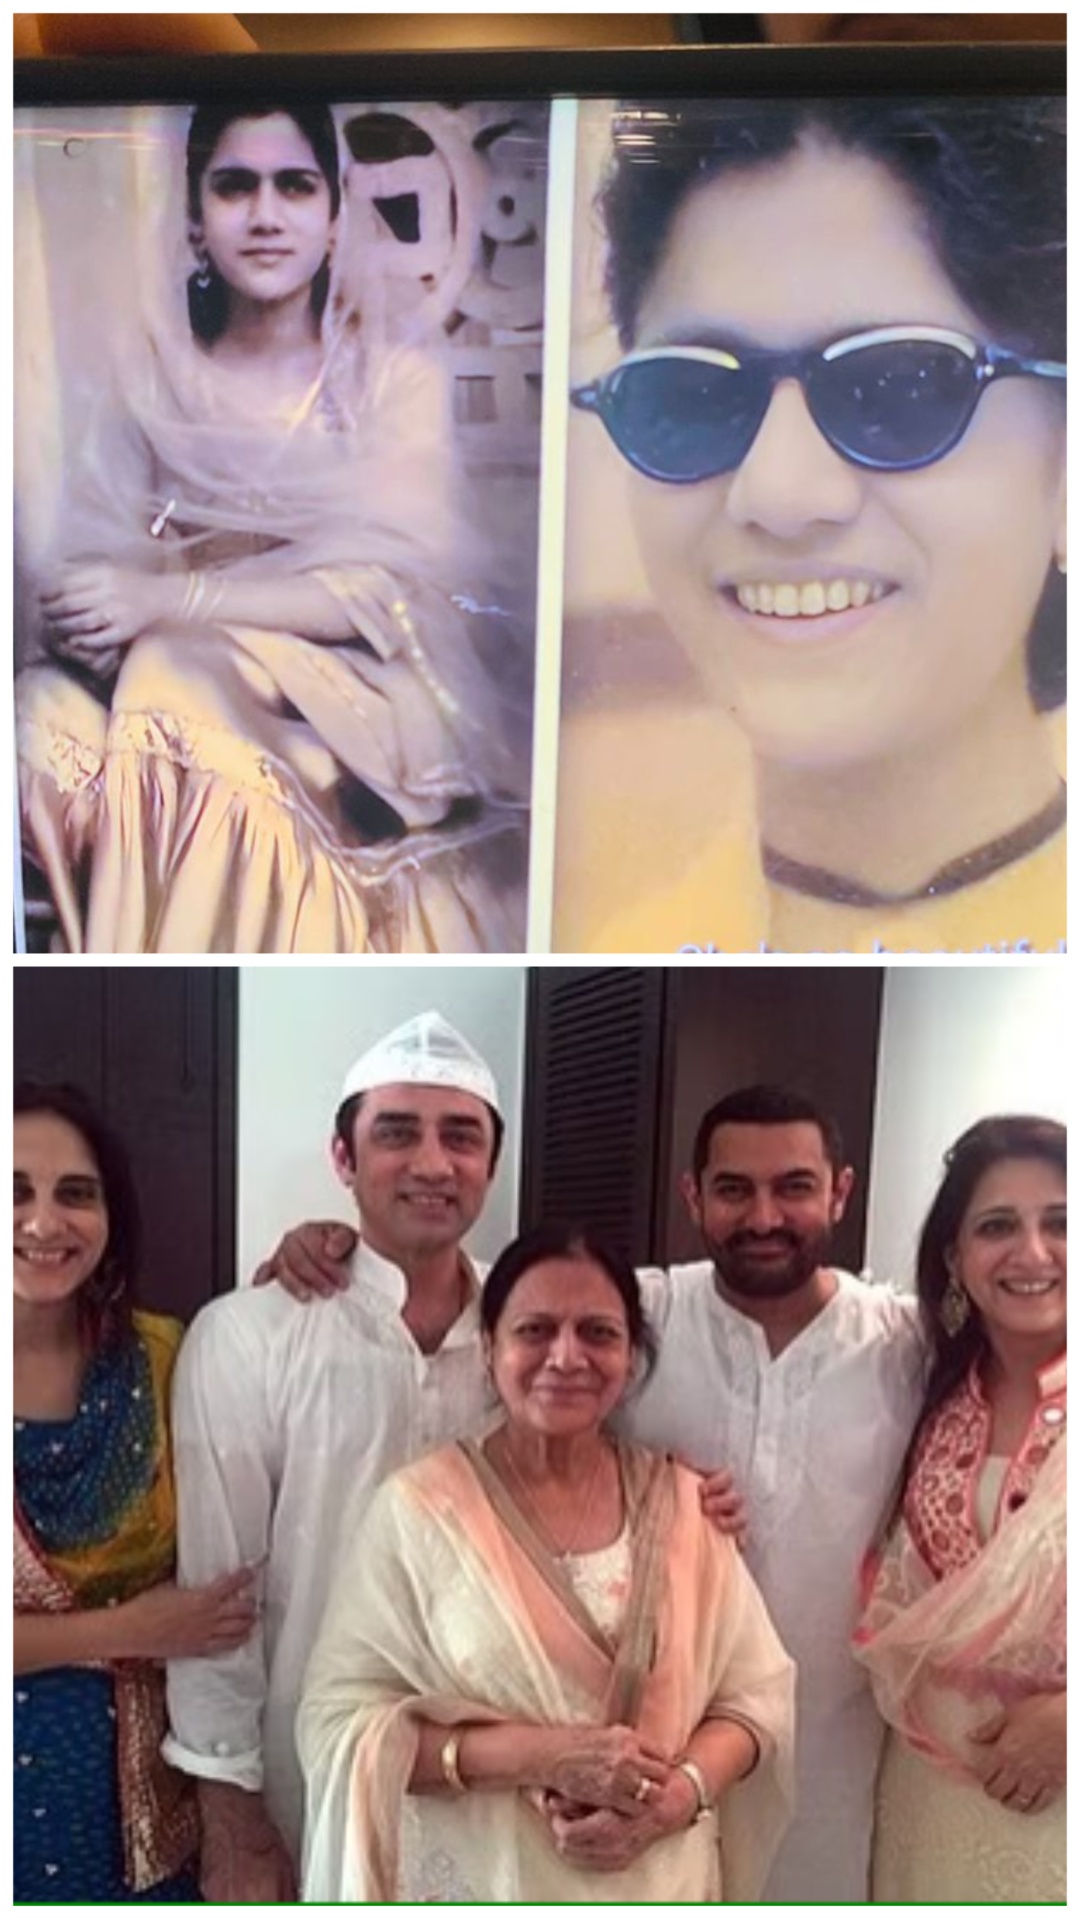 आमिर खान की अम्मी जवानी में दिखती थीं इतनी खूबसूरत, बेटियों में भी दिखती है मां की परछाई